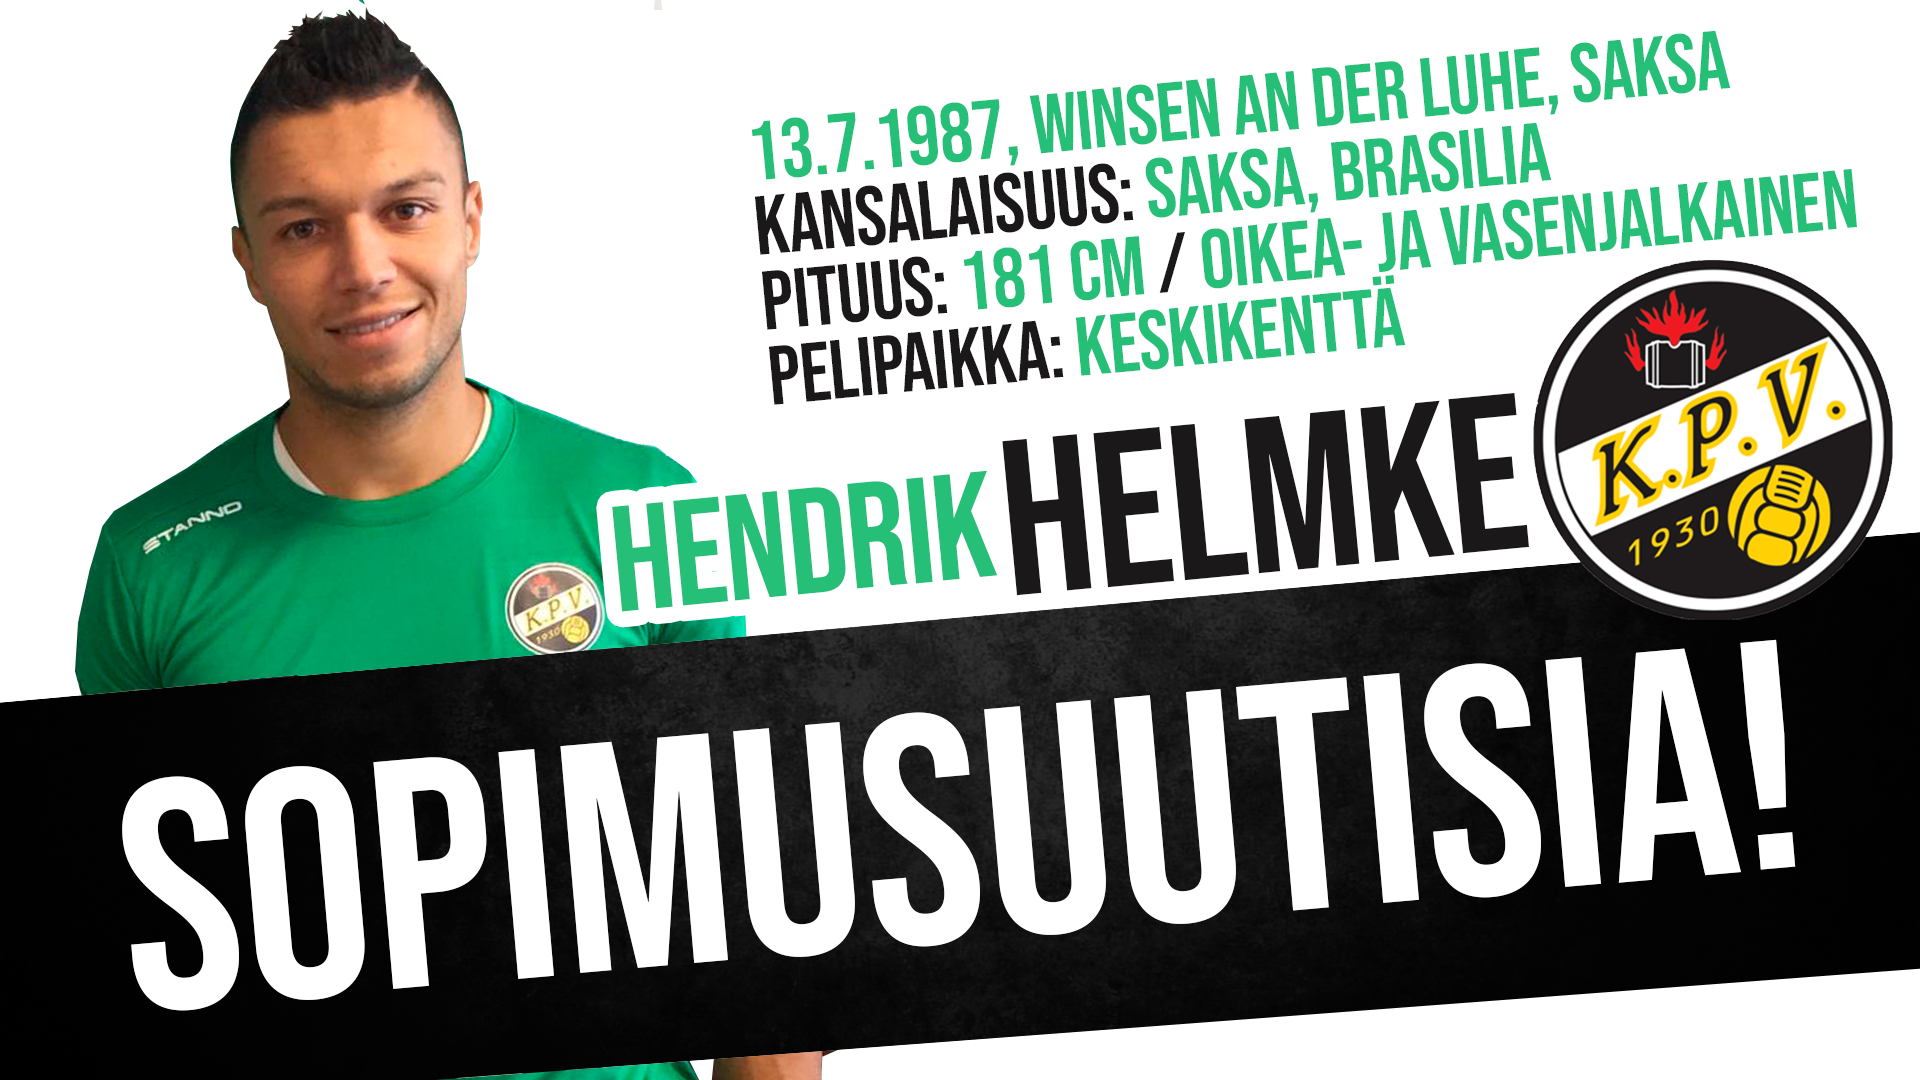 SOPIMUSUUTISIA: Hendrik Helmke KPV:n paitaan!